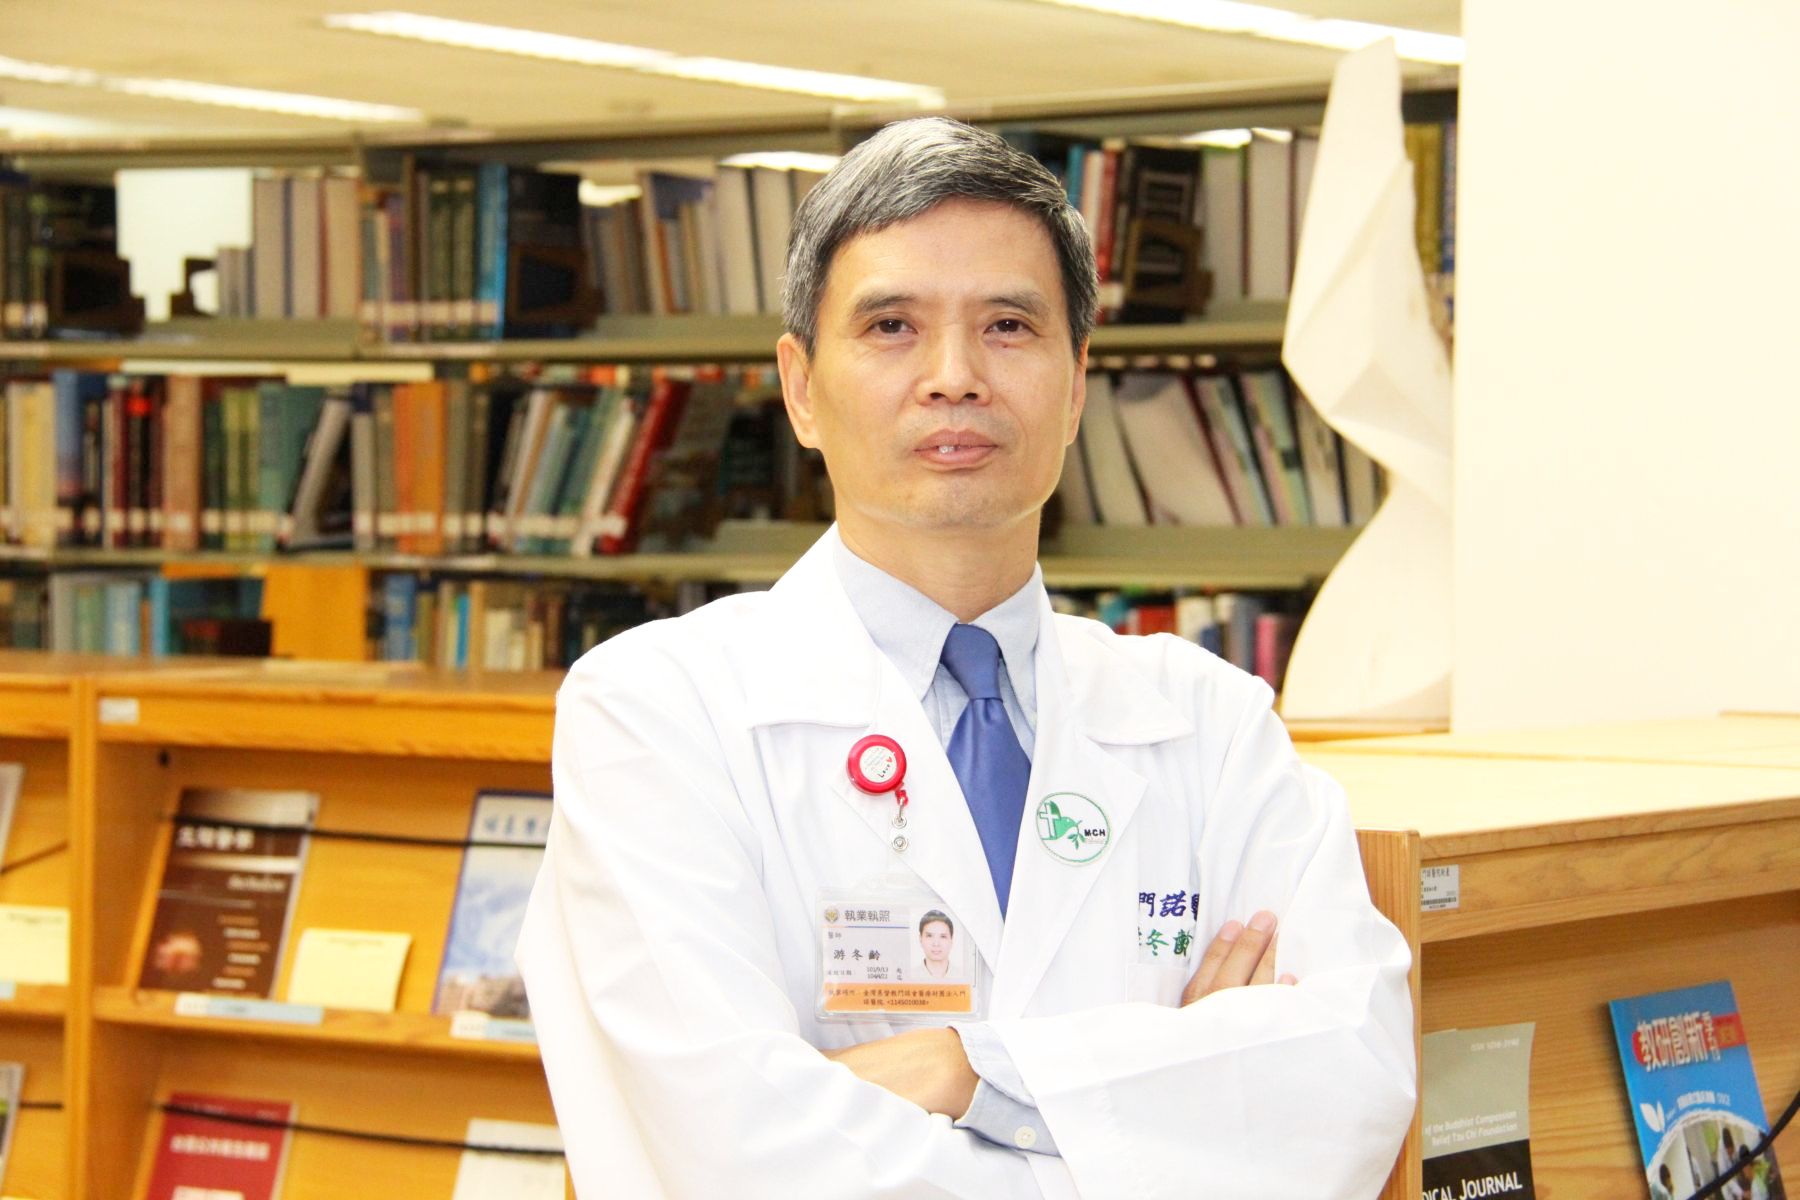 Dr. Tung-Liang Yu